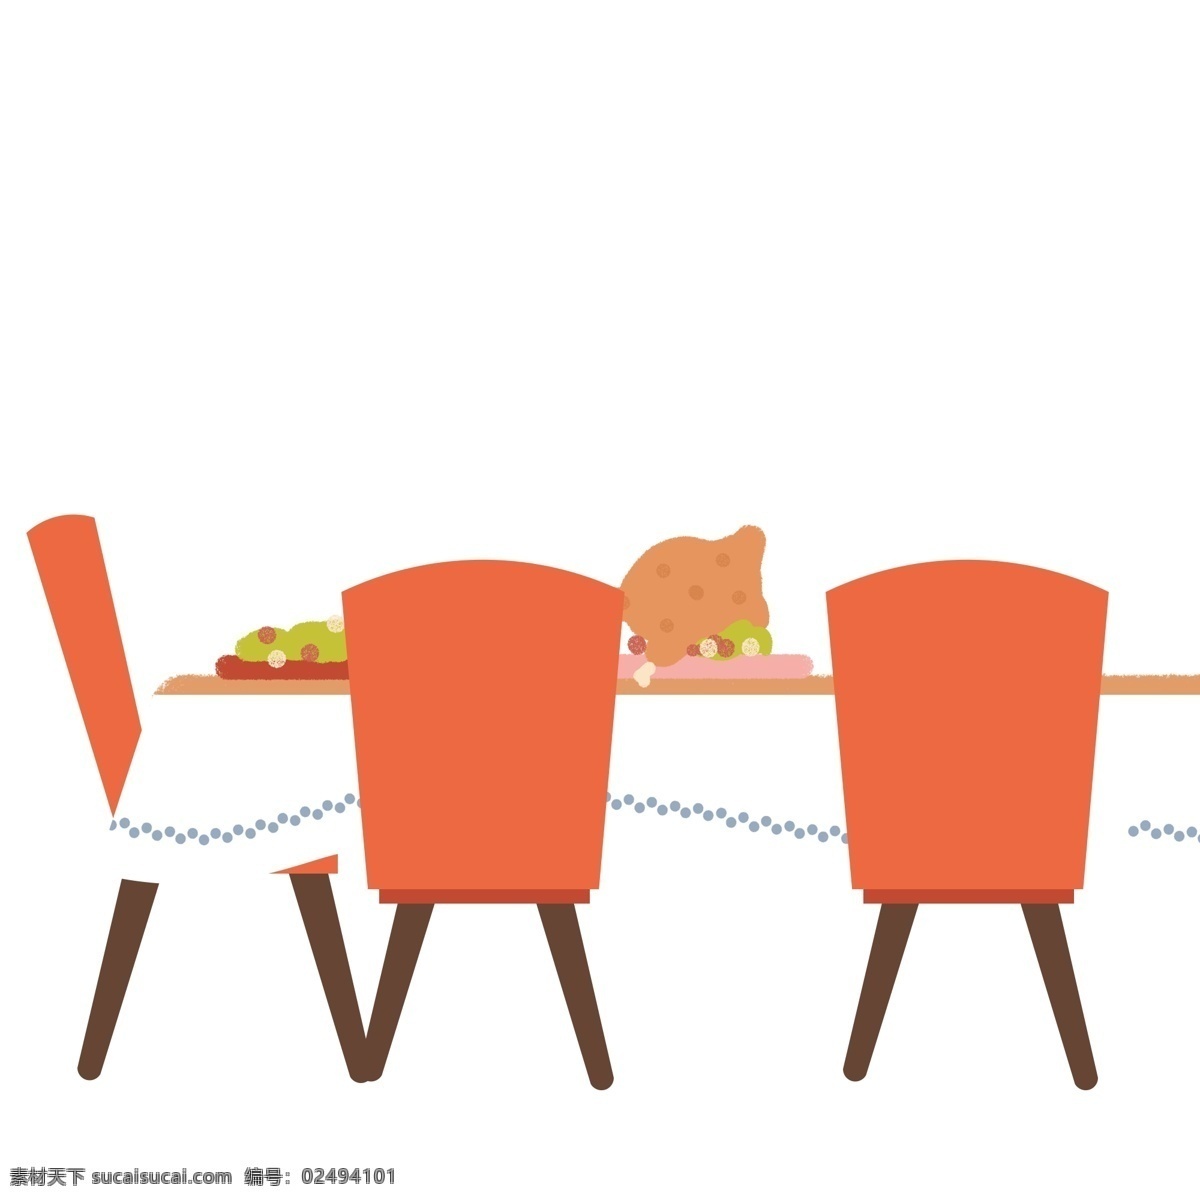 扁平化 桌 食物 插画 元素 卡通 简约 桌子 美食 椅子